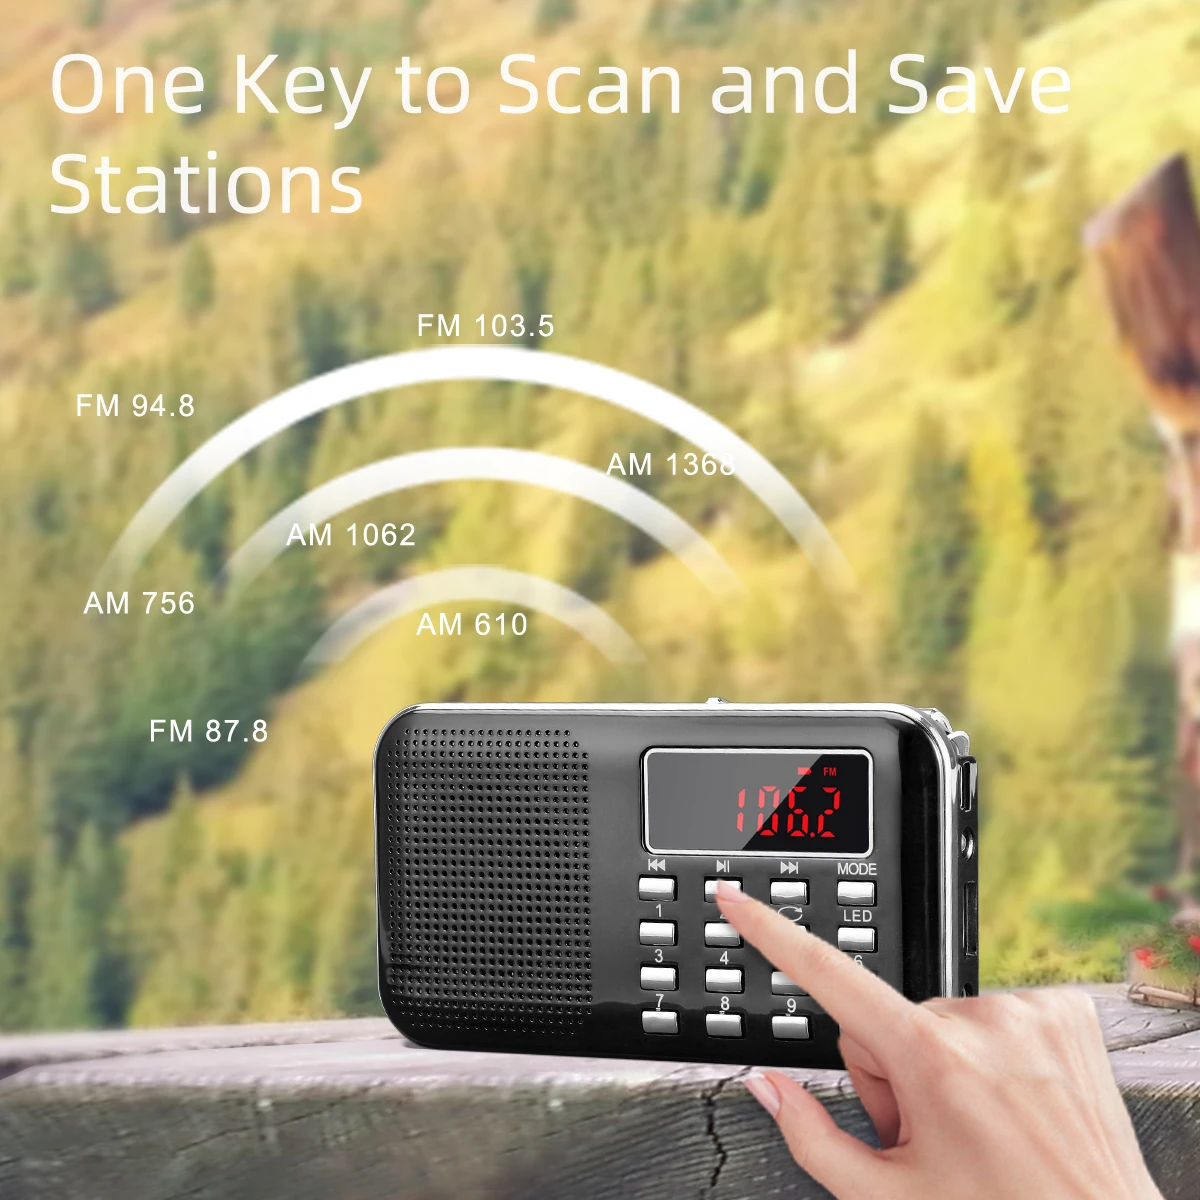 PRUNUS L-218 мини fm-радио приемник AM/fm/SD карты MP3 play спикер USB/AUX портативный аварийный радиоприемник со светодиодным светильник/антенной